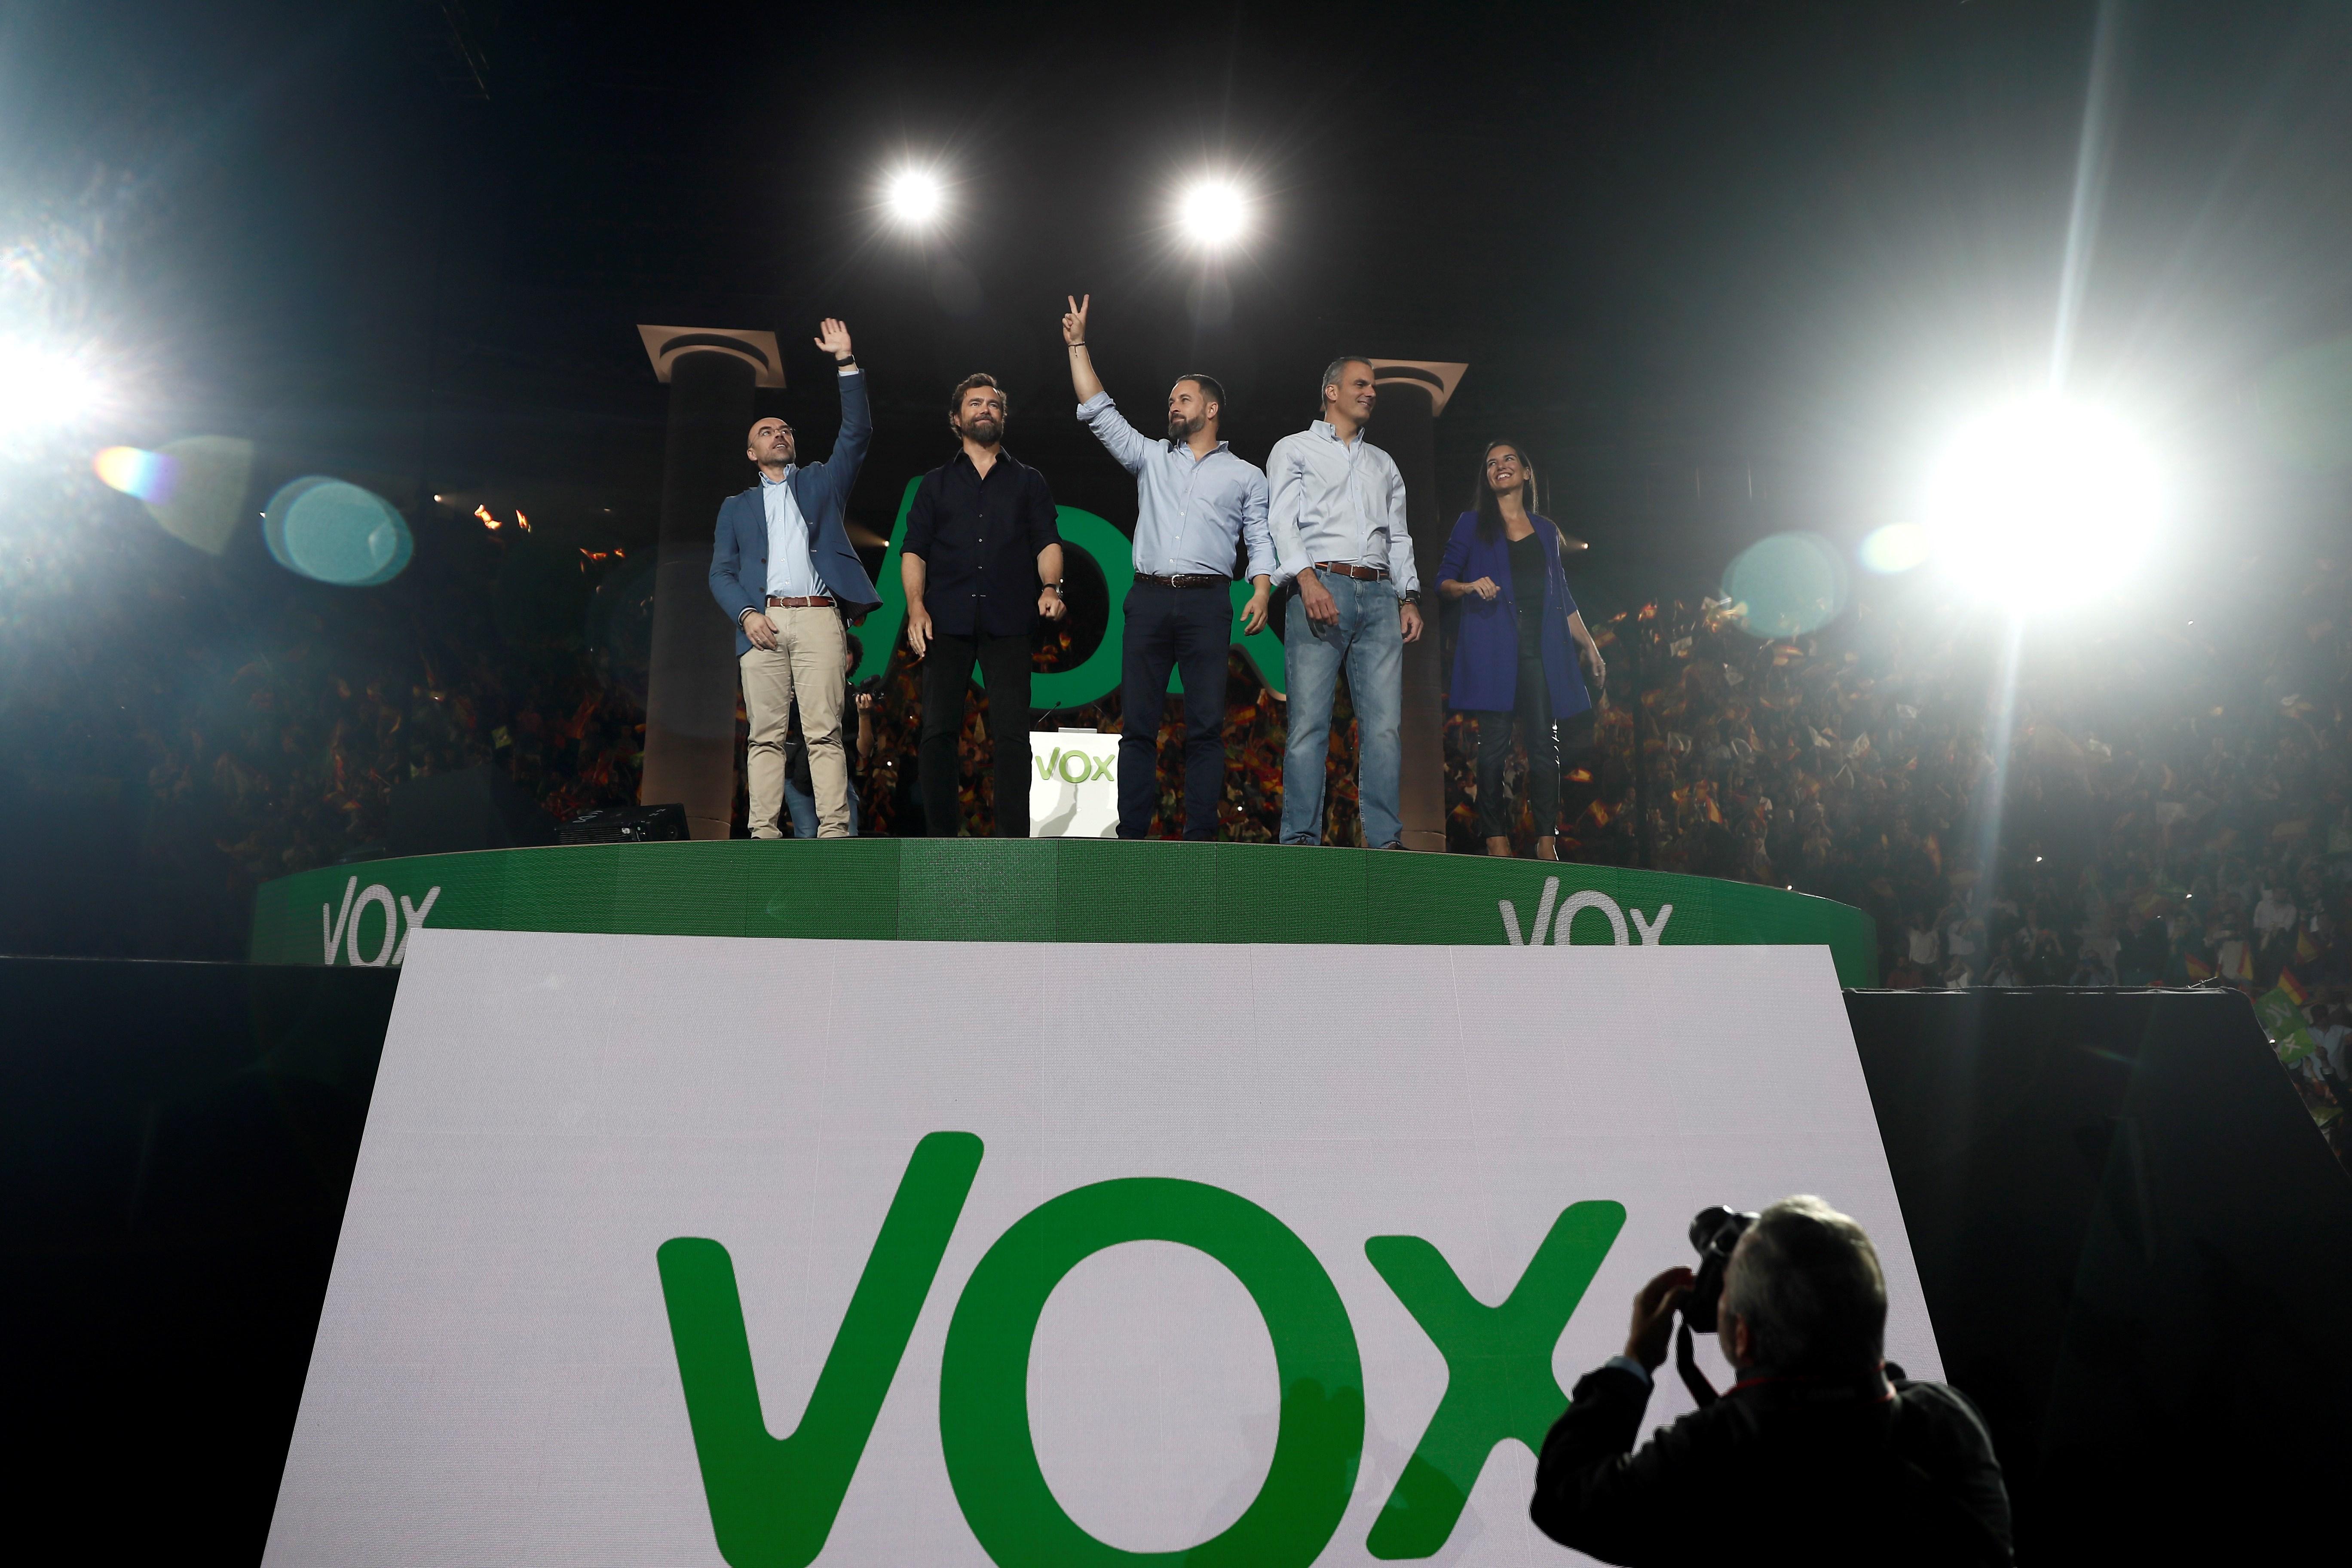 VÍDEO | Vox utiliza una canción que amenaza a Puigdemont